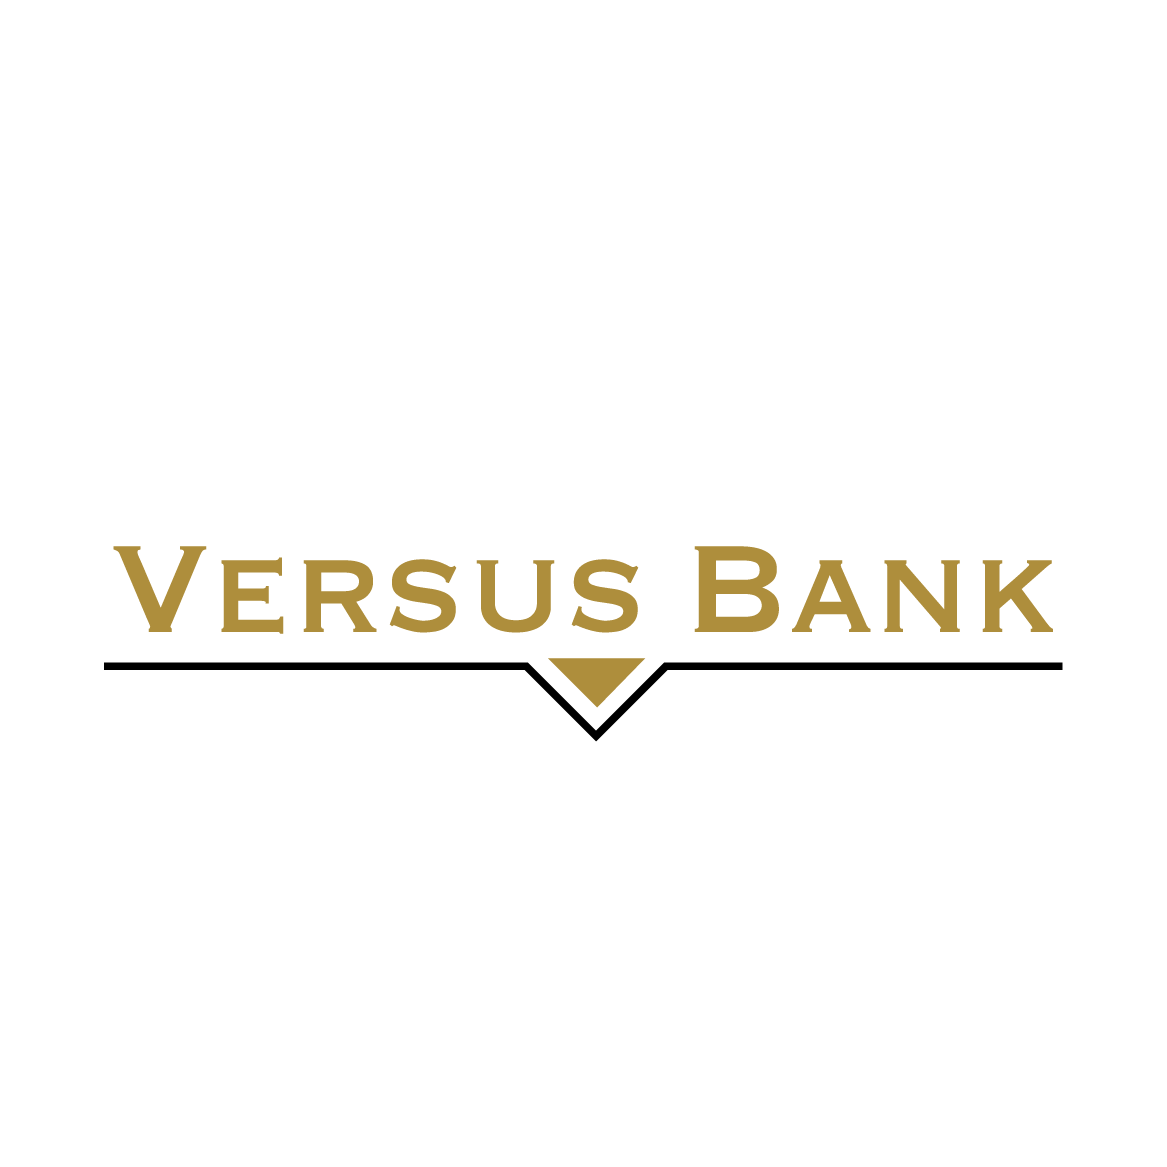 versus bank